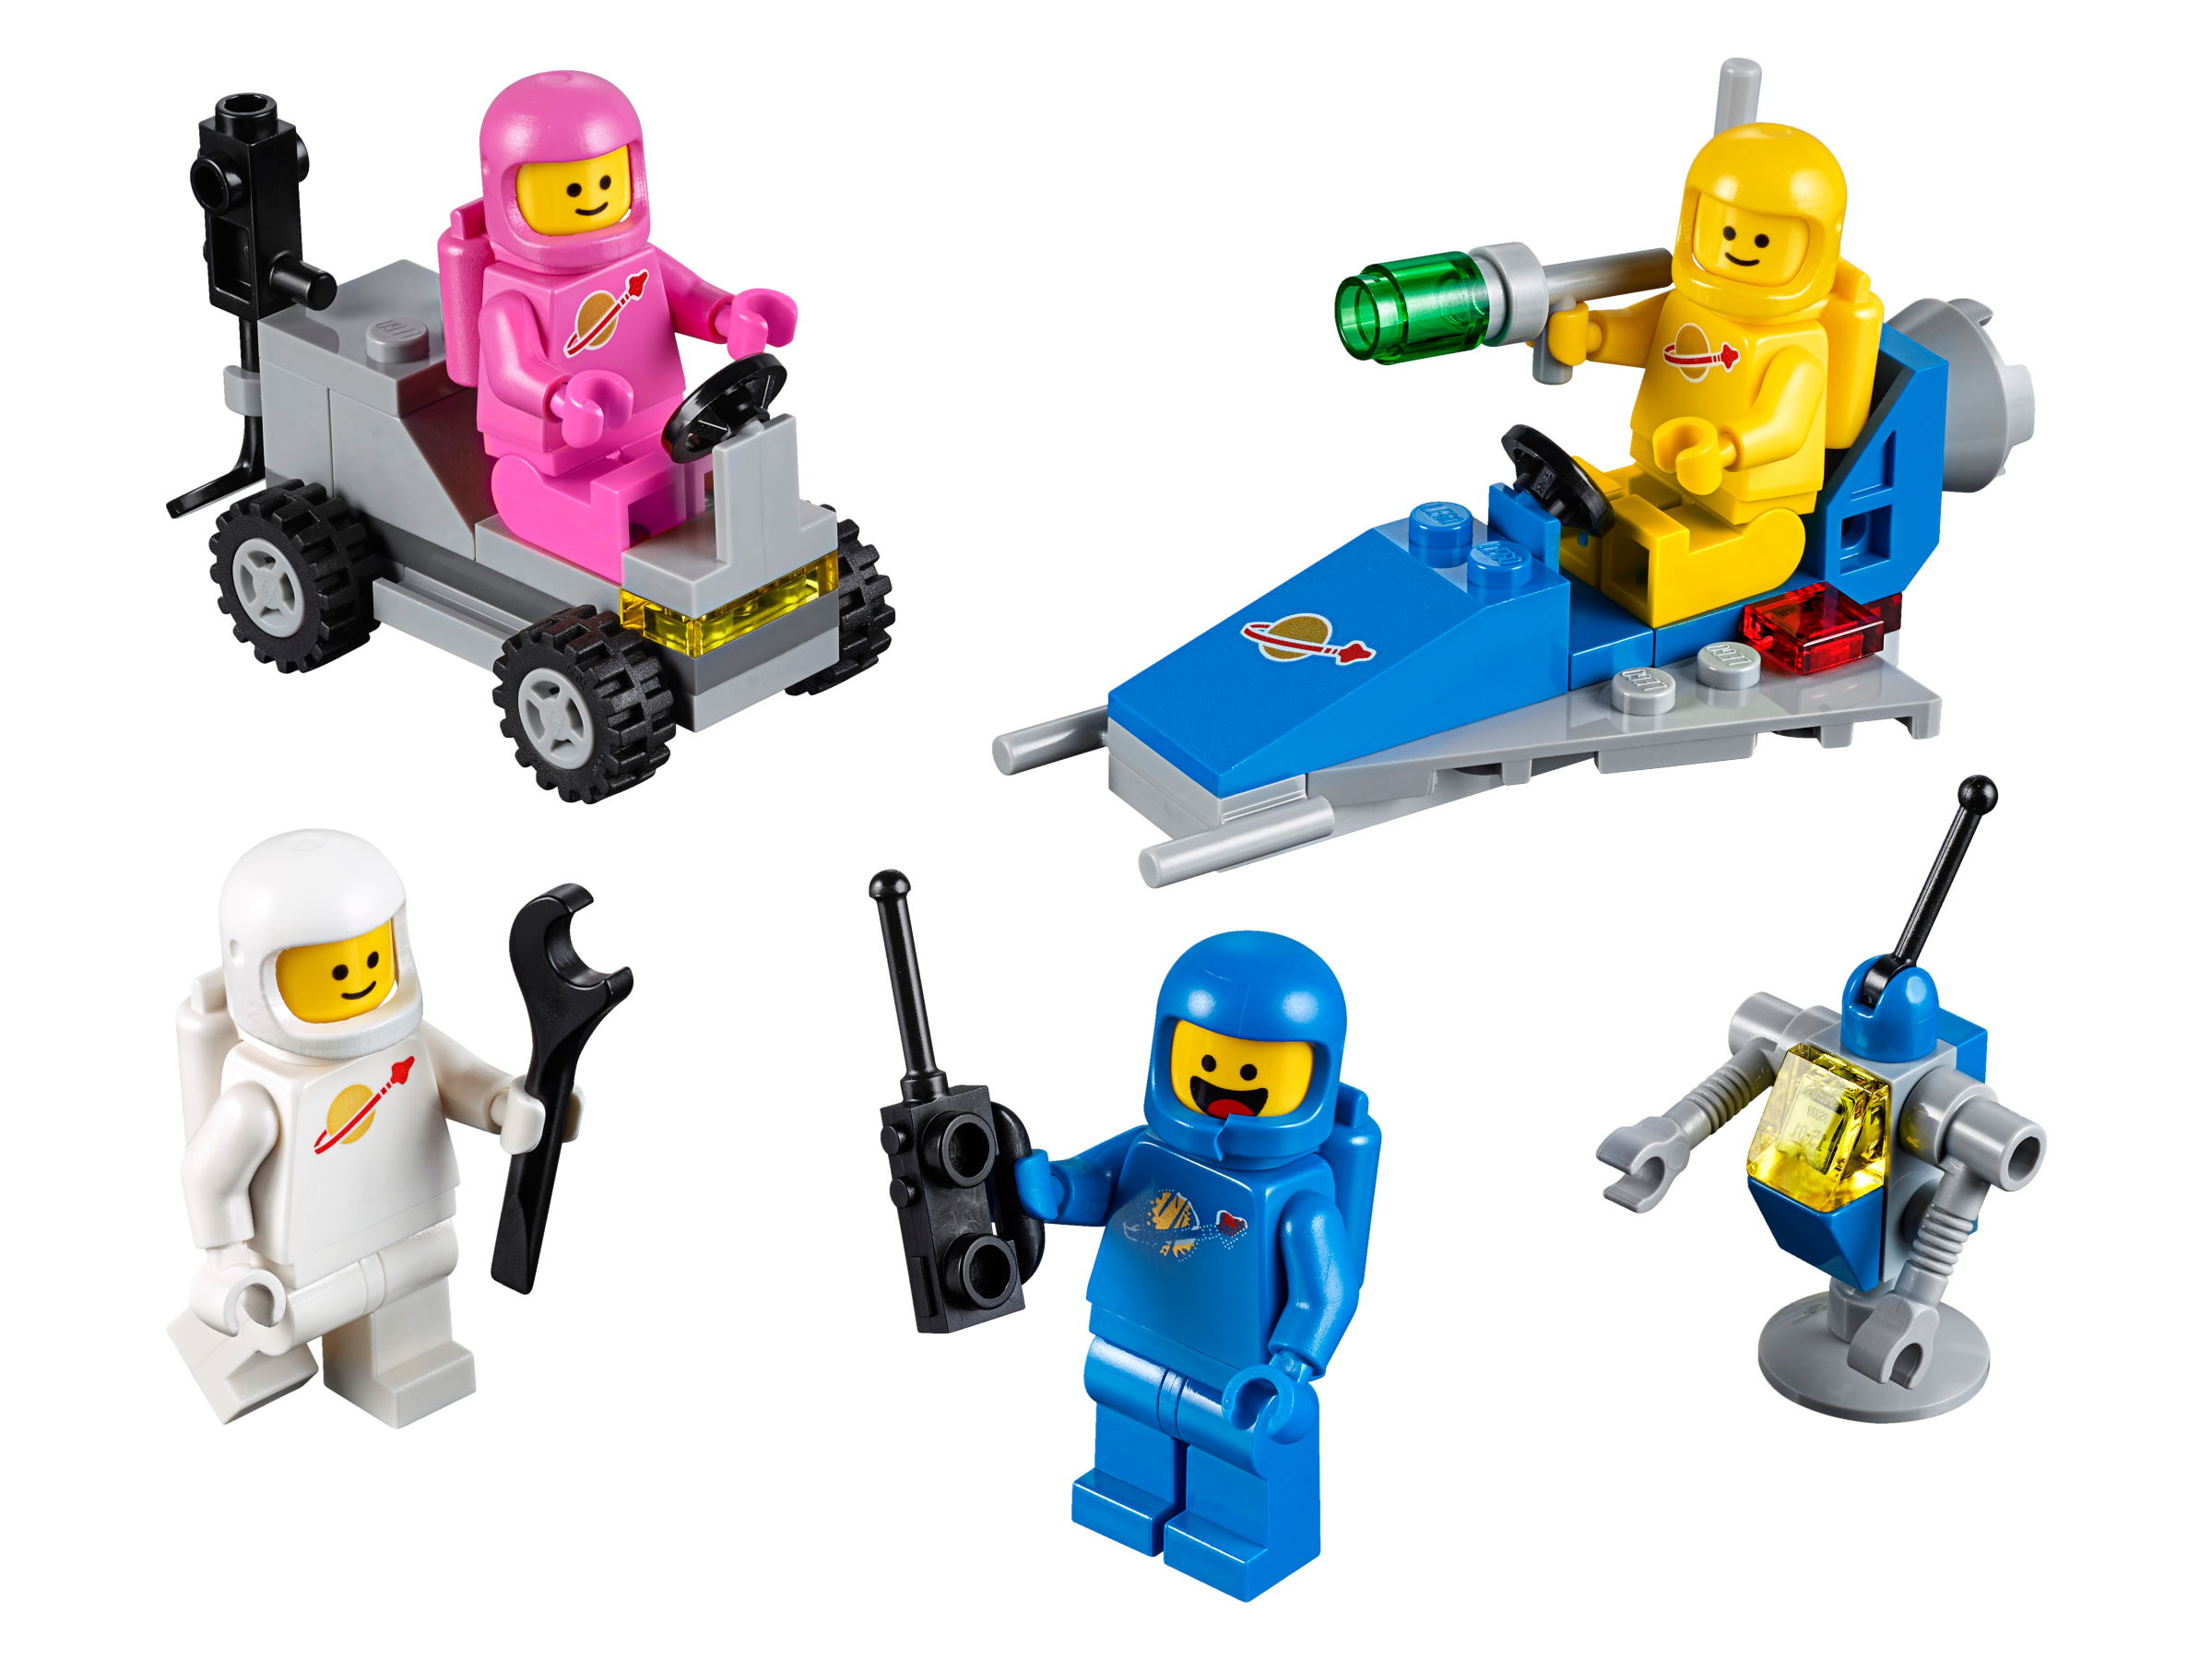 LEGO Movie Brigada spatiala a lui Benny 70841